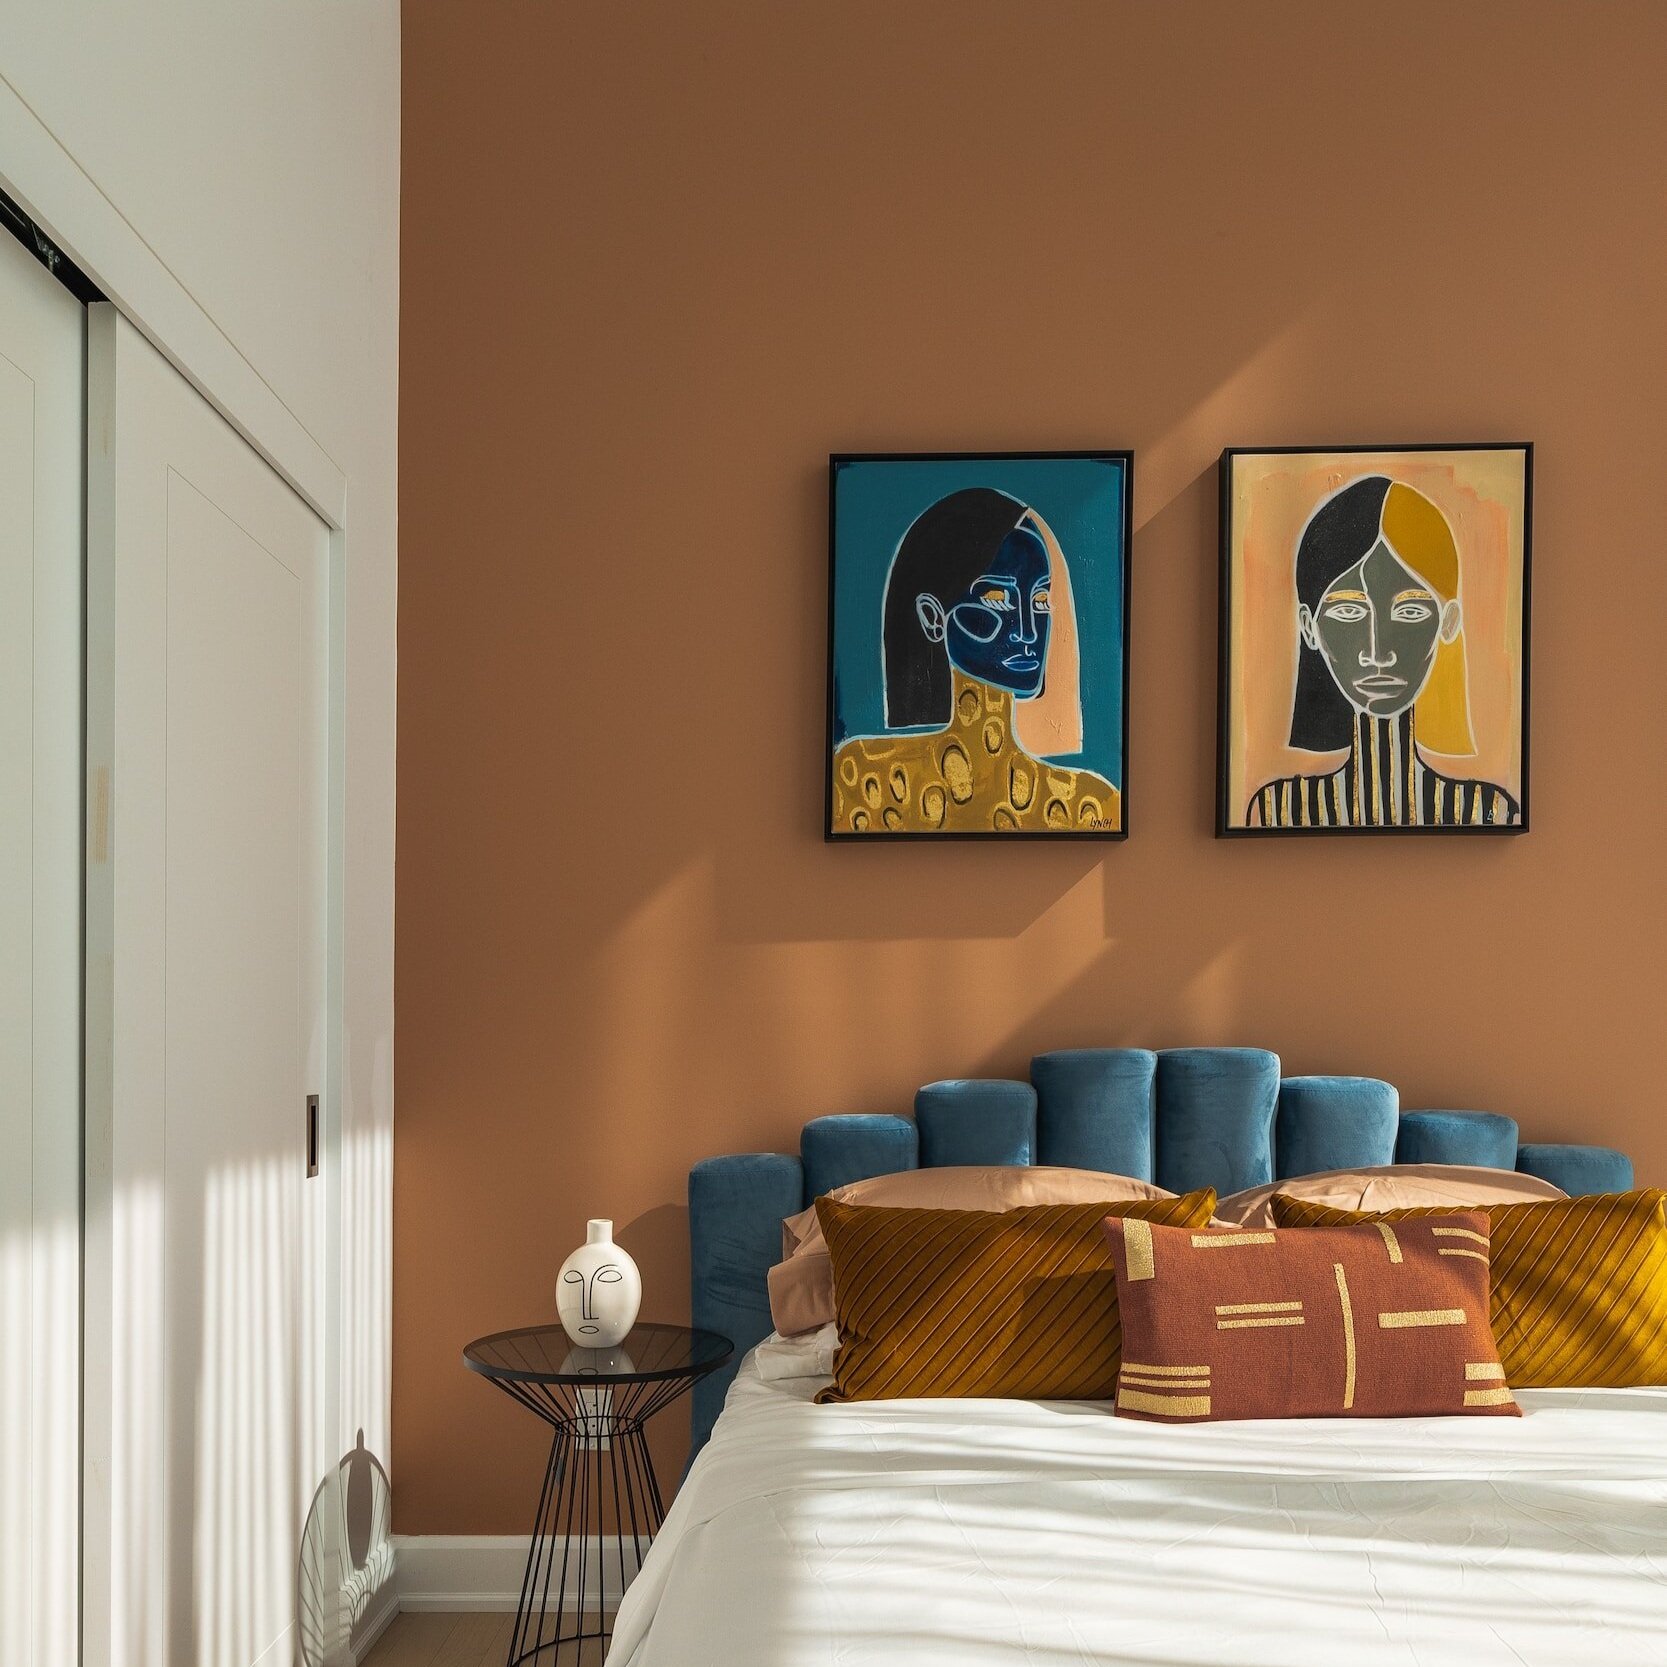 Dal malva mistico alla terracotta: le tendenze cromatiche più in voga per la vostra camera da letto